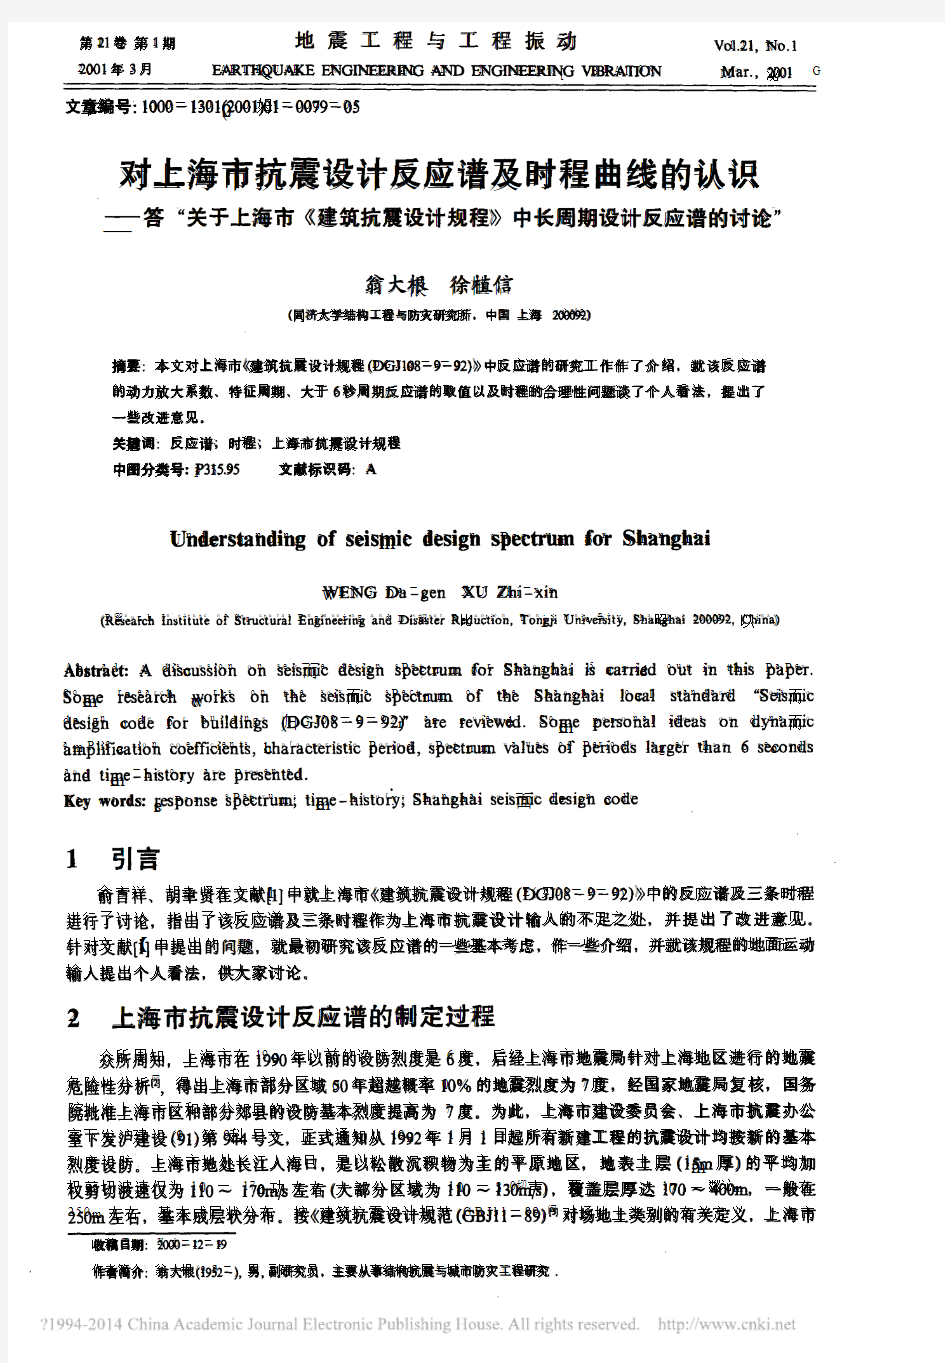 对上海市抗震设计反应谱及时程曲线_省略_规程_中长周期设计反应谱的讨论_翁大根